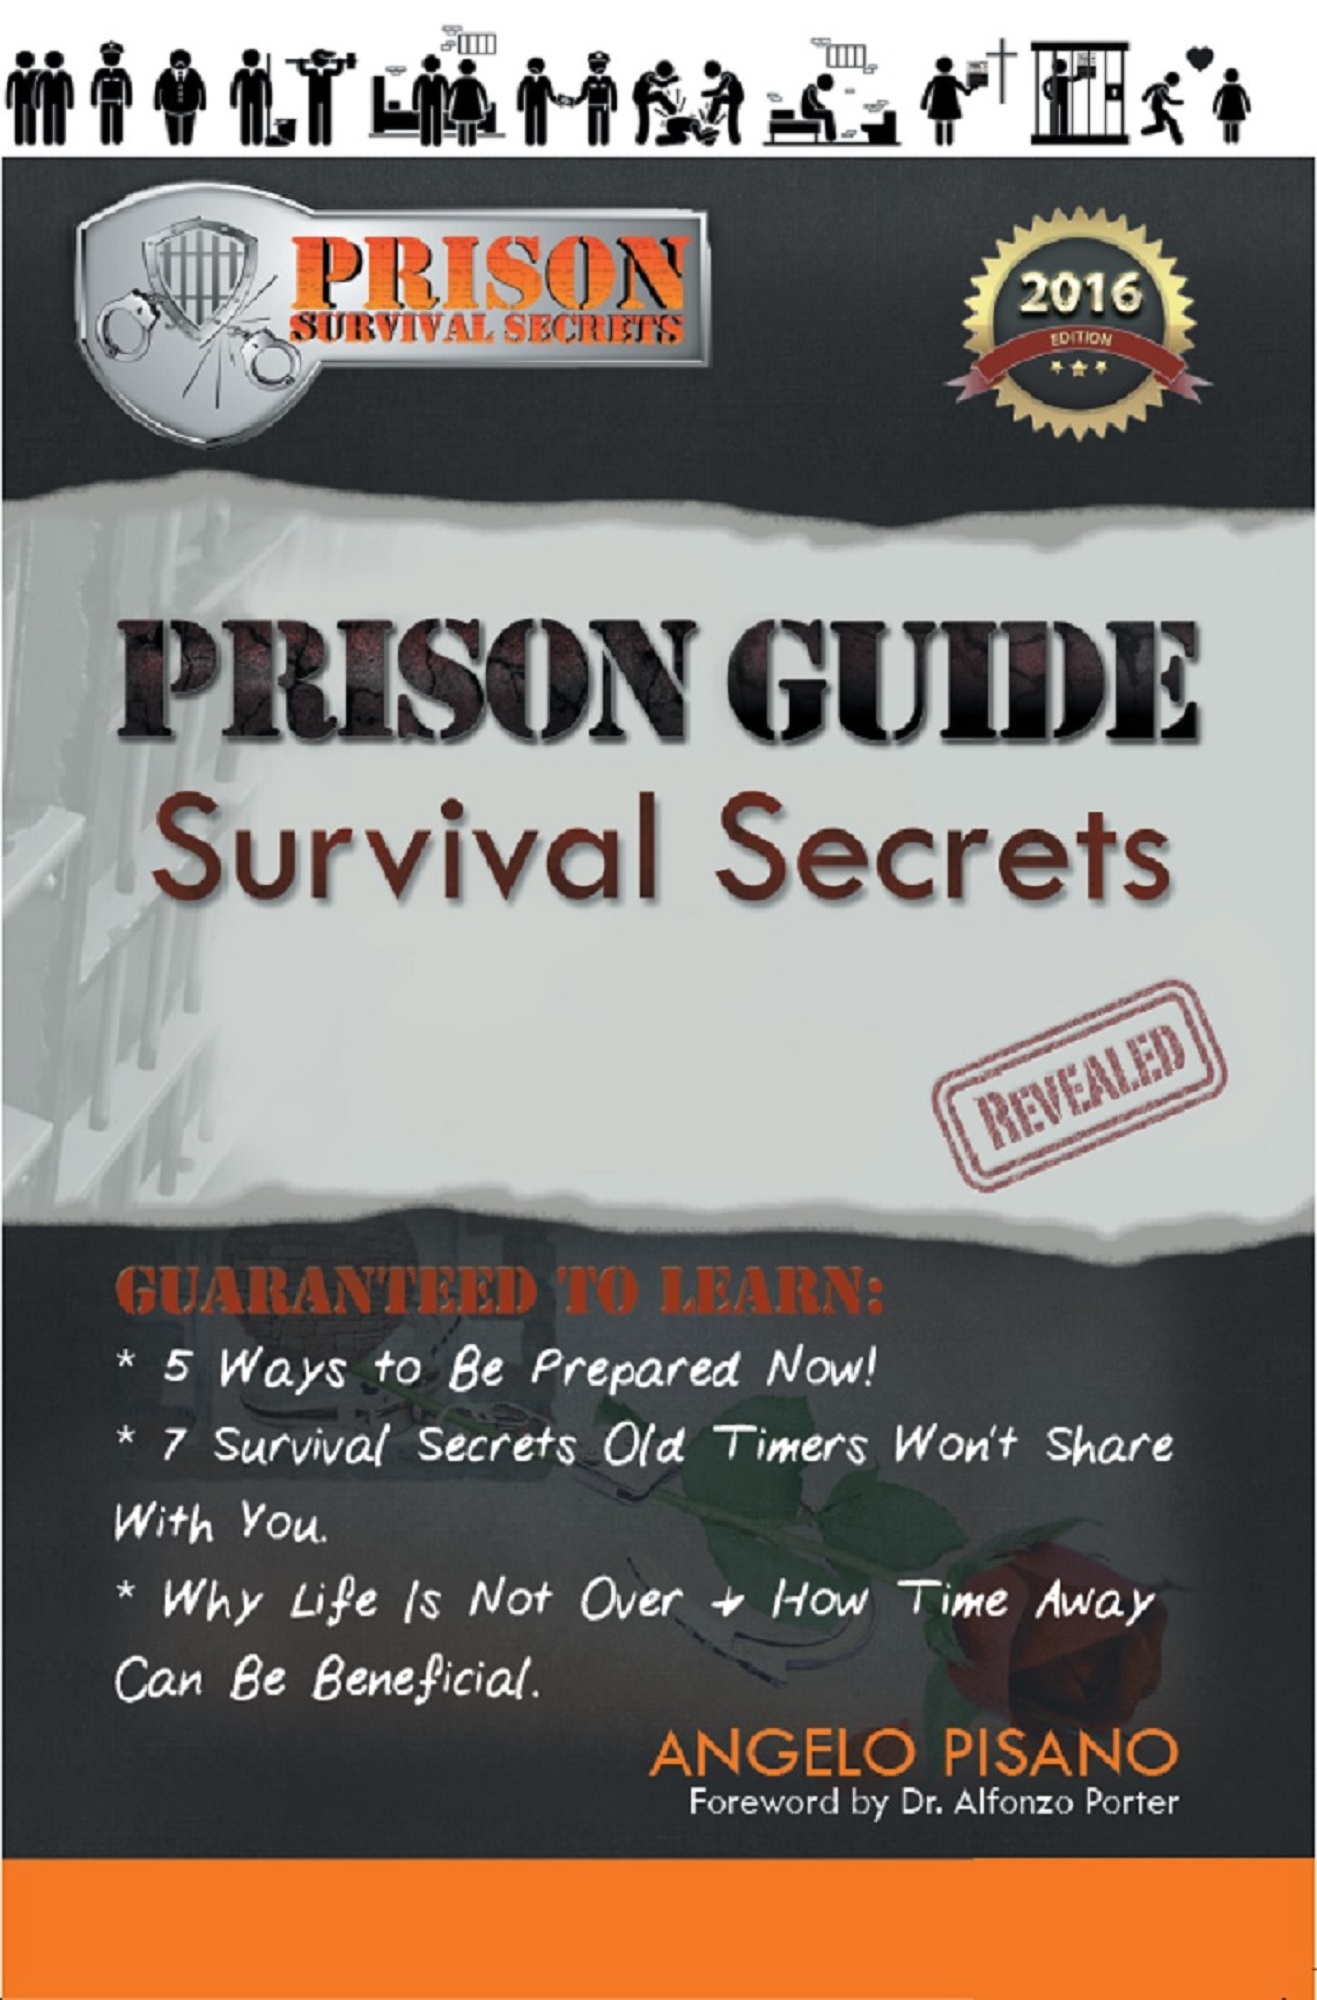 Prison Guide Cover Image